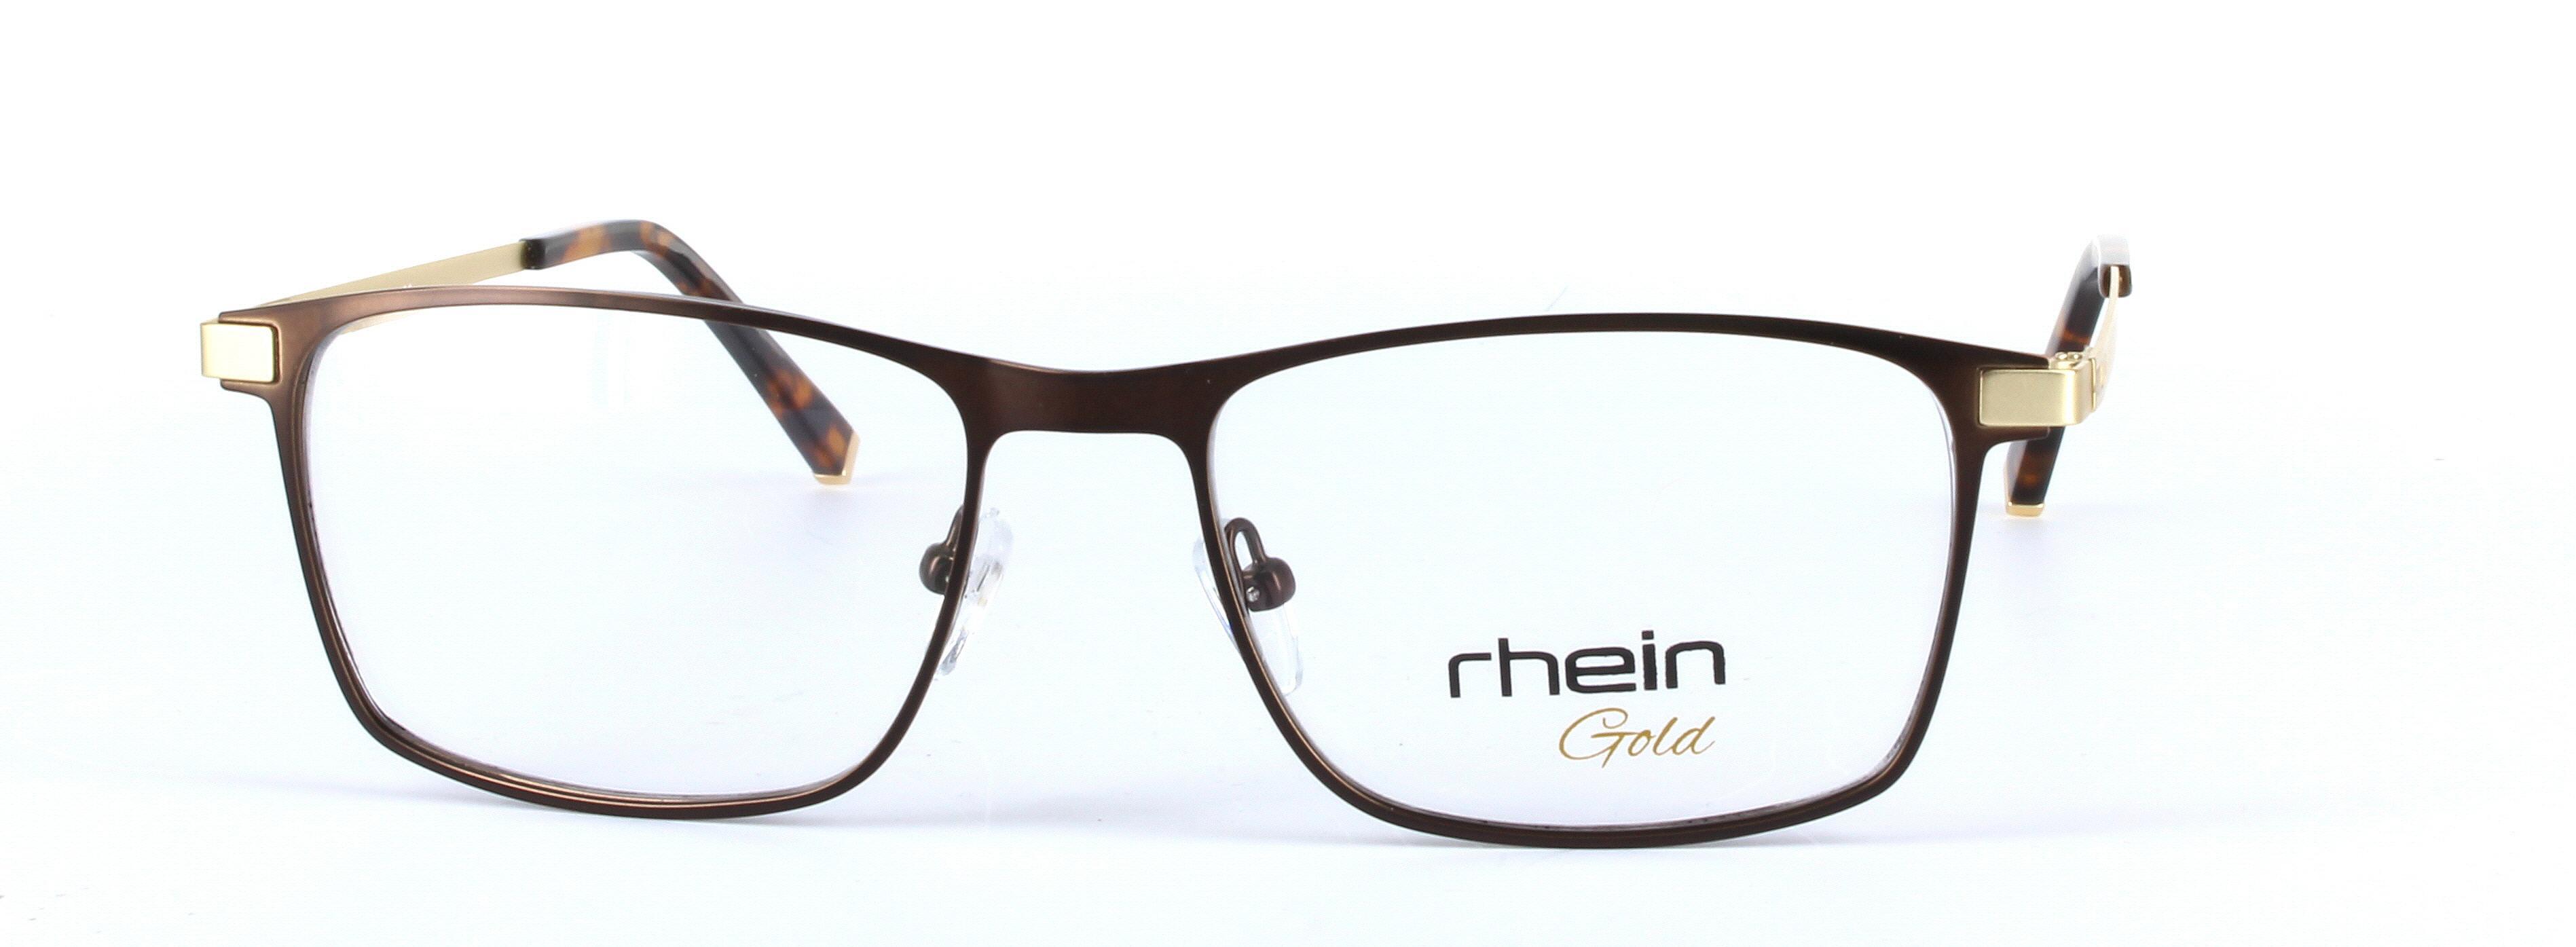 Adam Brown Oval Rectangular Metal Glasses - Image View 5